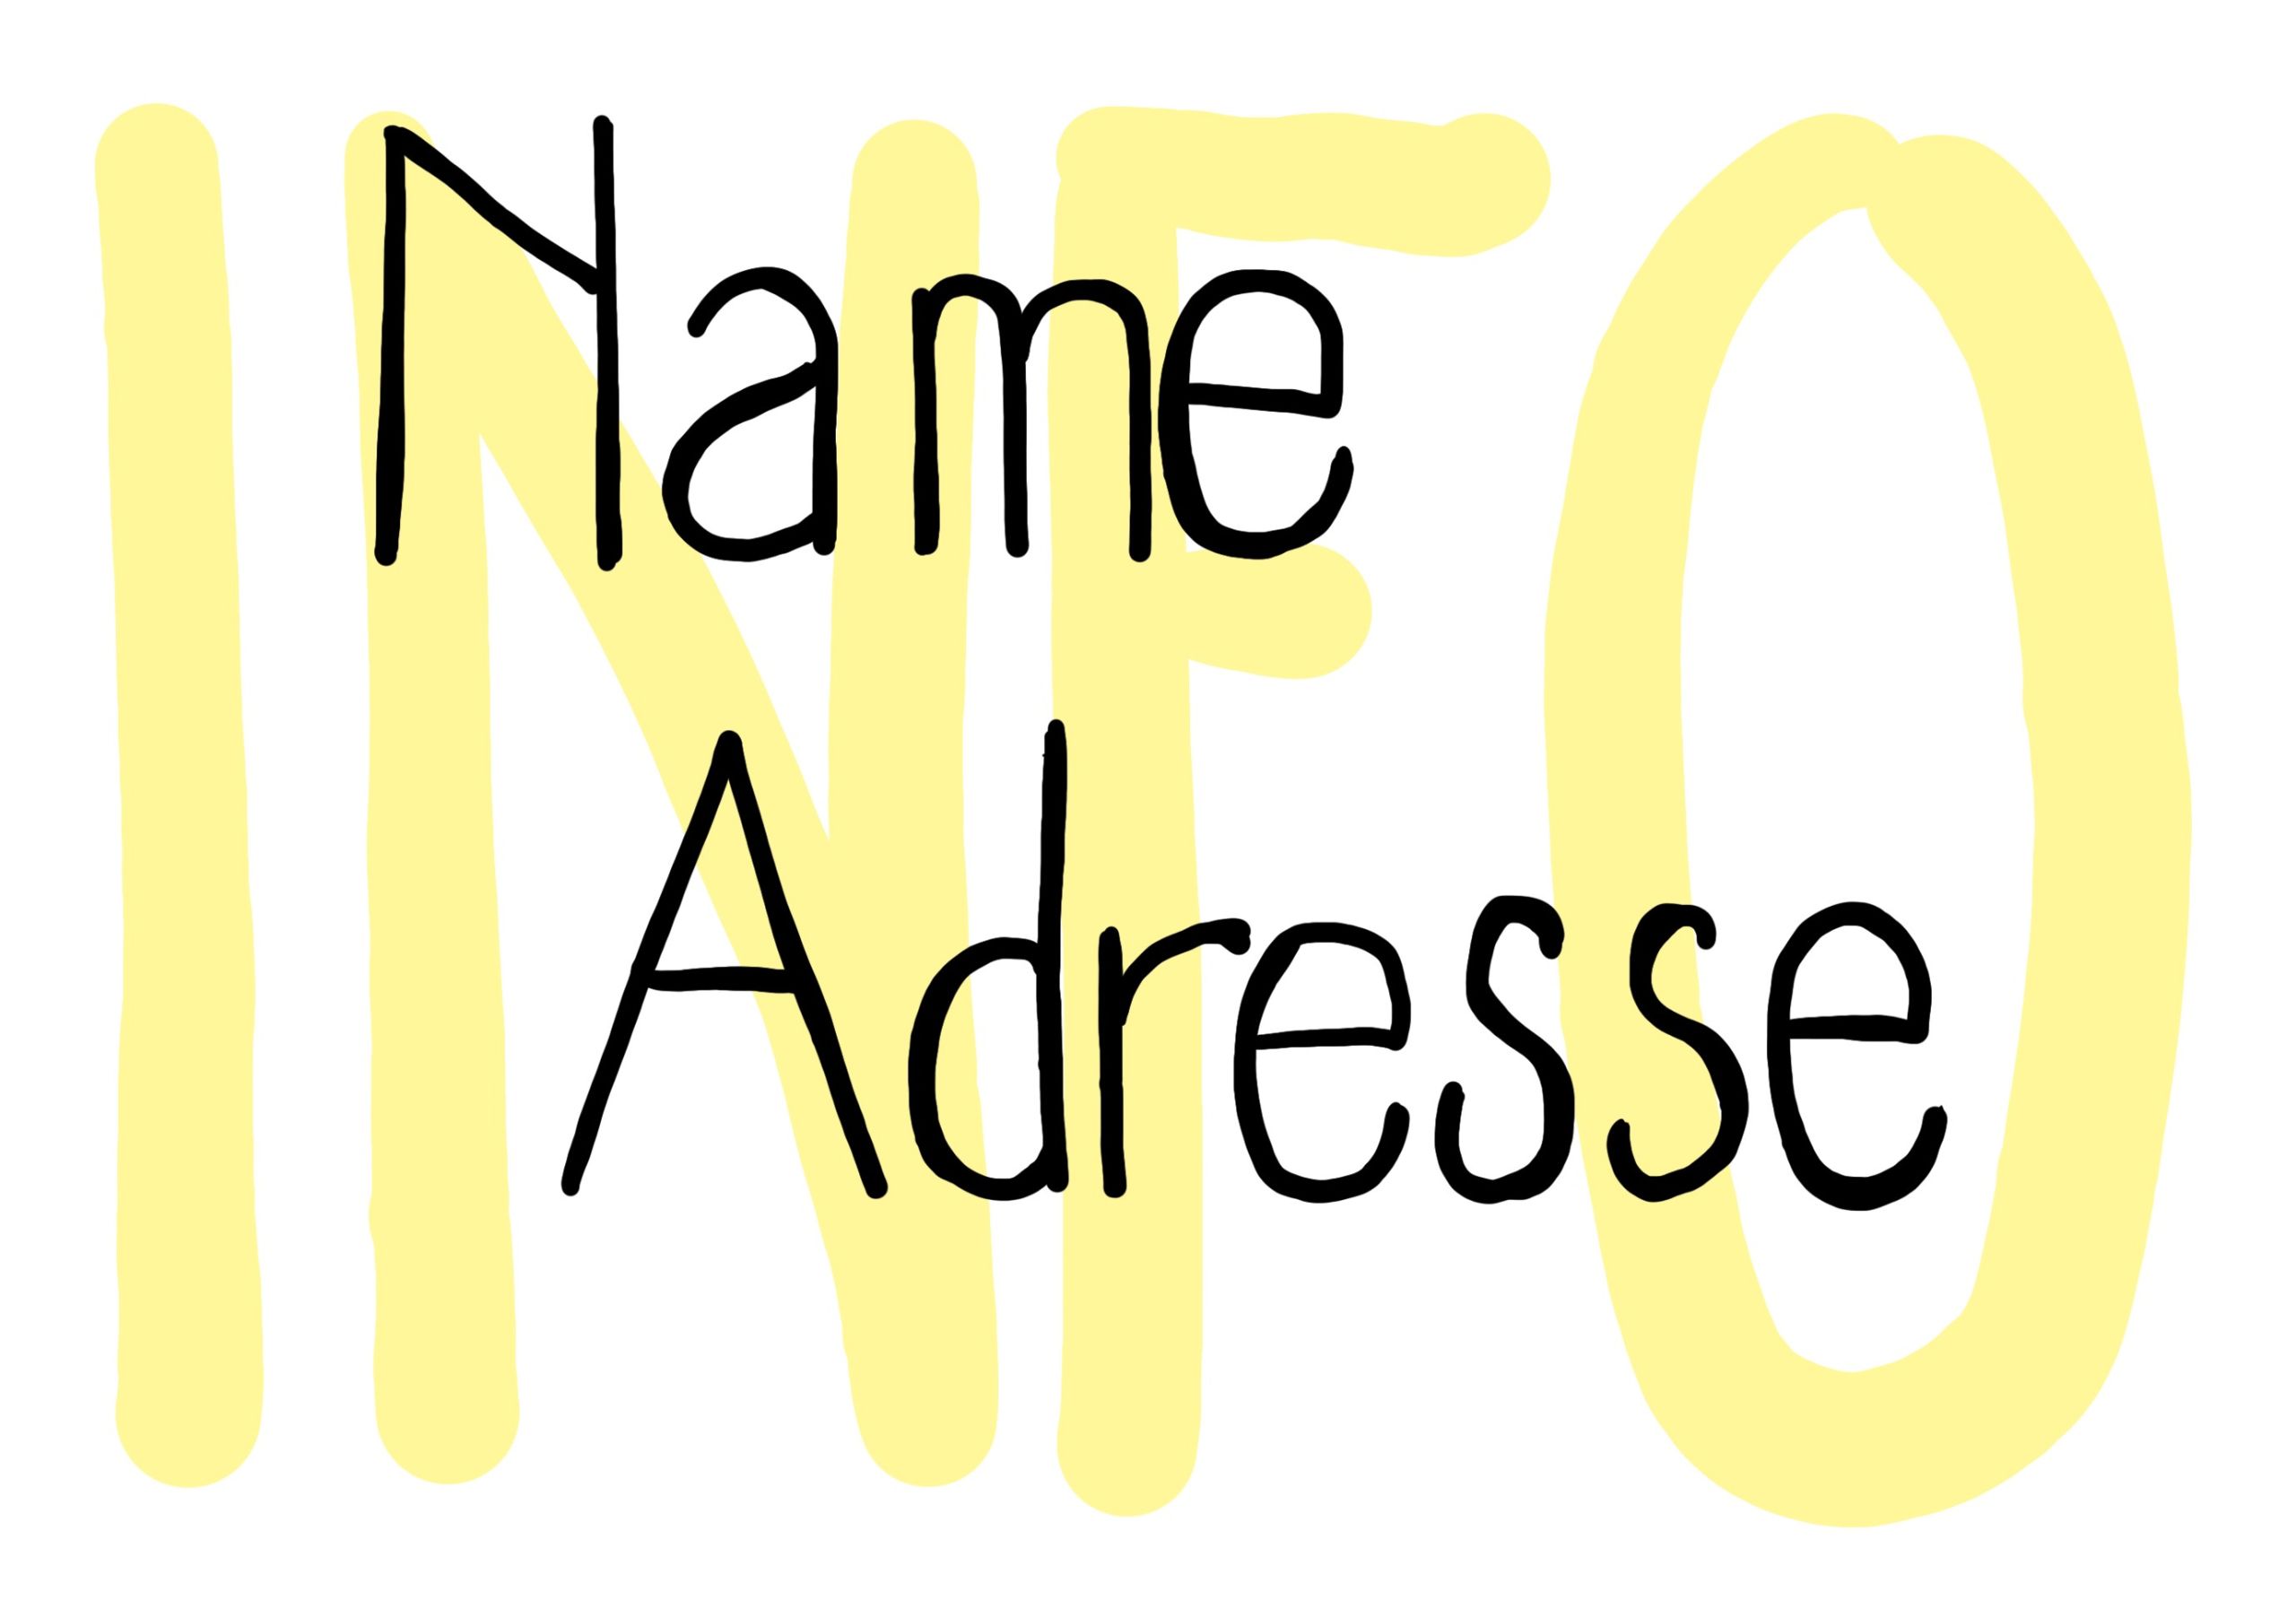 Schriftbild: Im Hintergrund steht in gelb und fett "INFO", darüber steht in schwarzen Buchstaben "Name" und "Adresse"